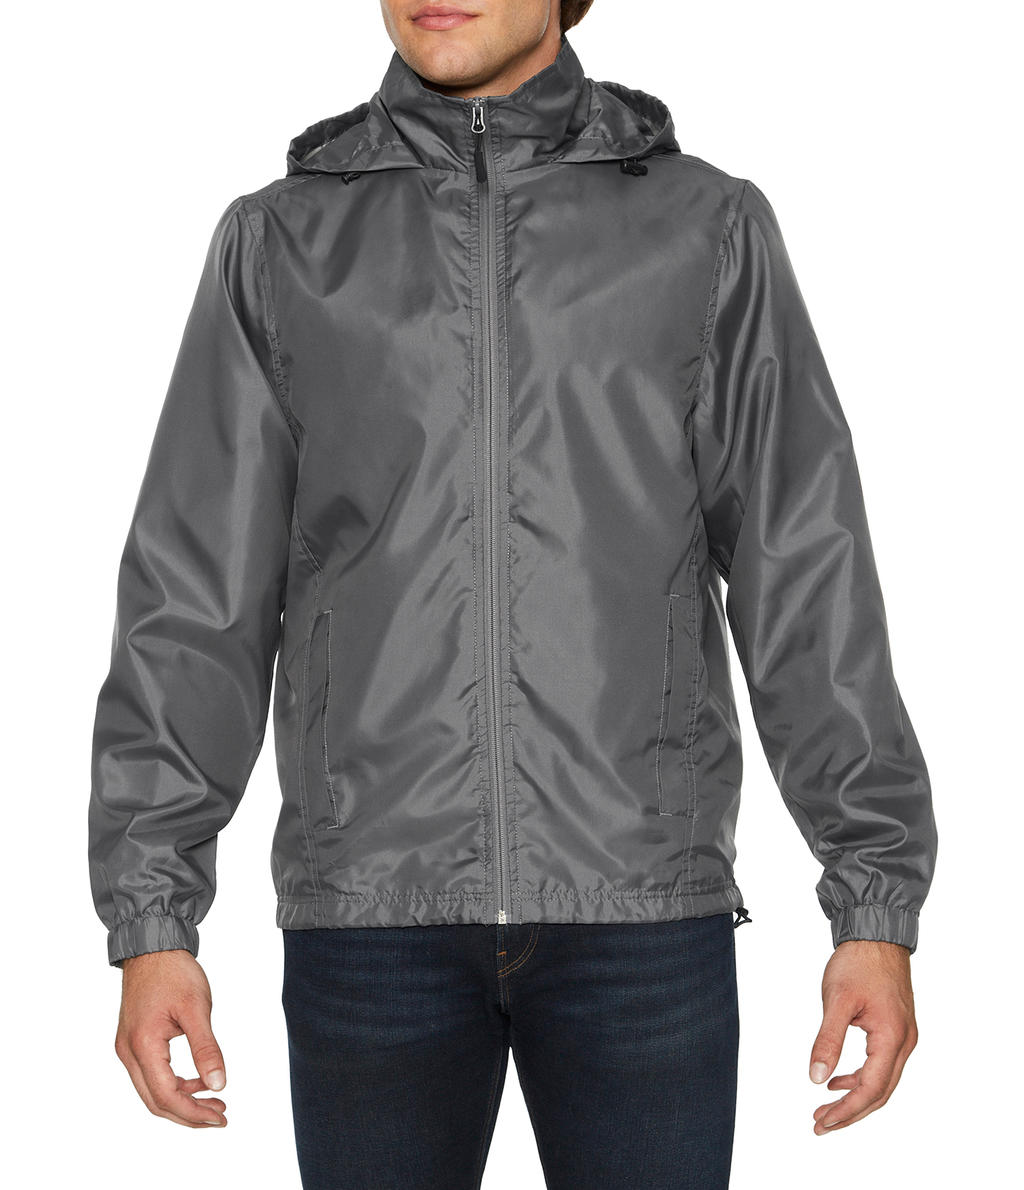  Hammer? Unisex Windwear Jacket in Farbe Charcoal